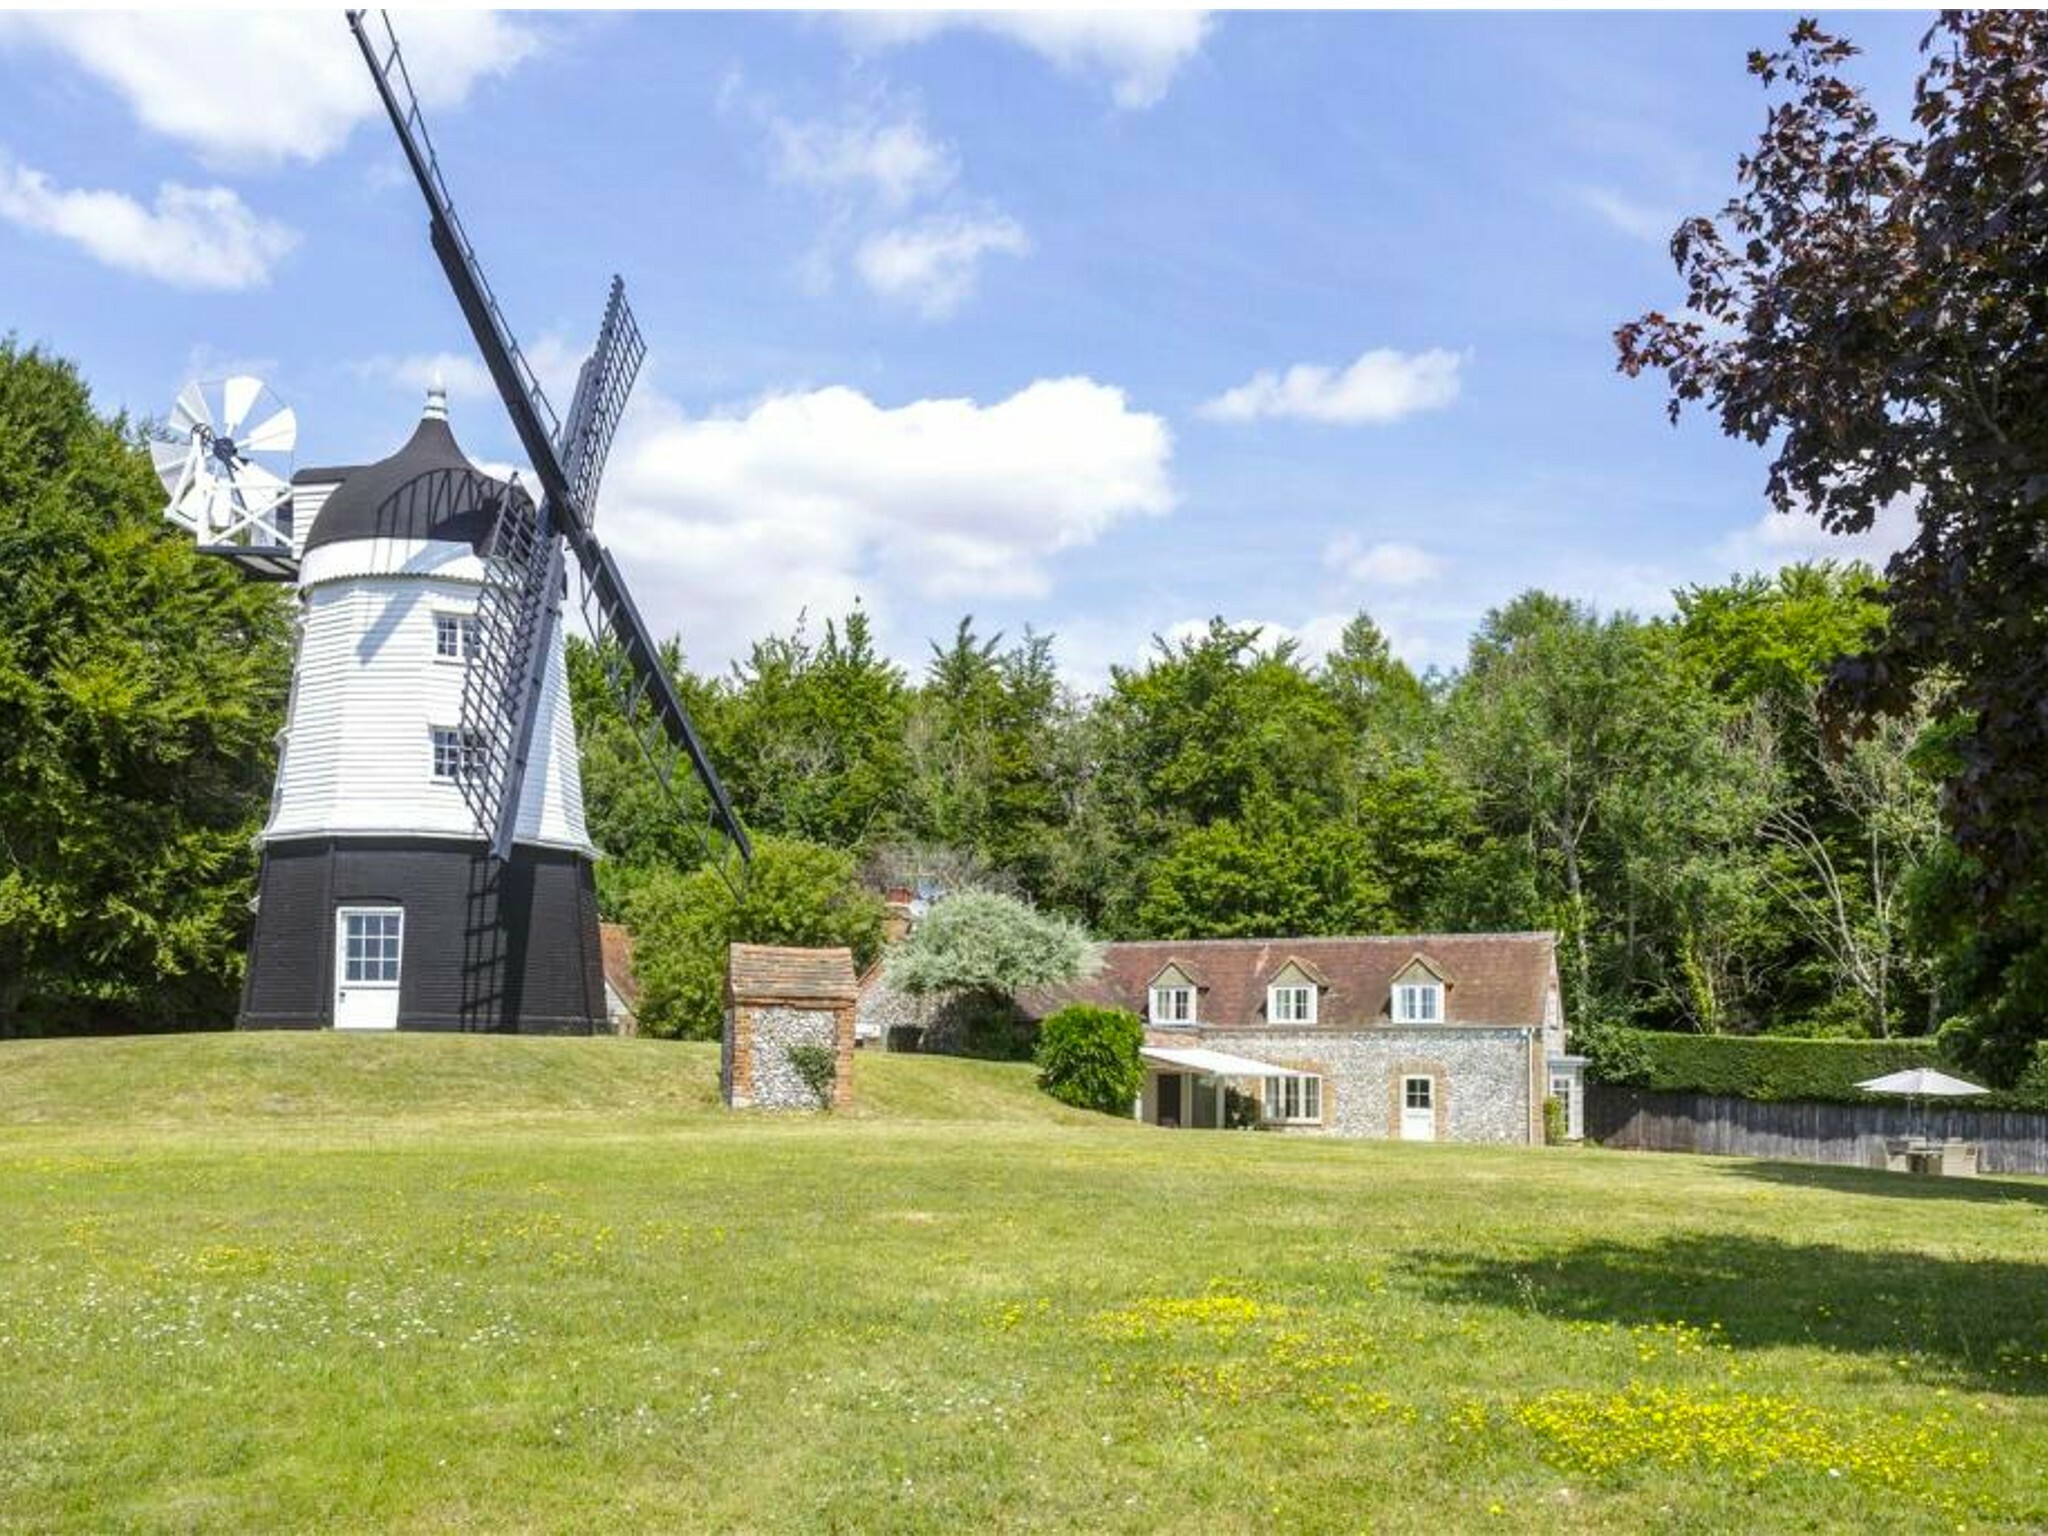 Cobstone Windmill in Ibstone, Buckinghamshire